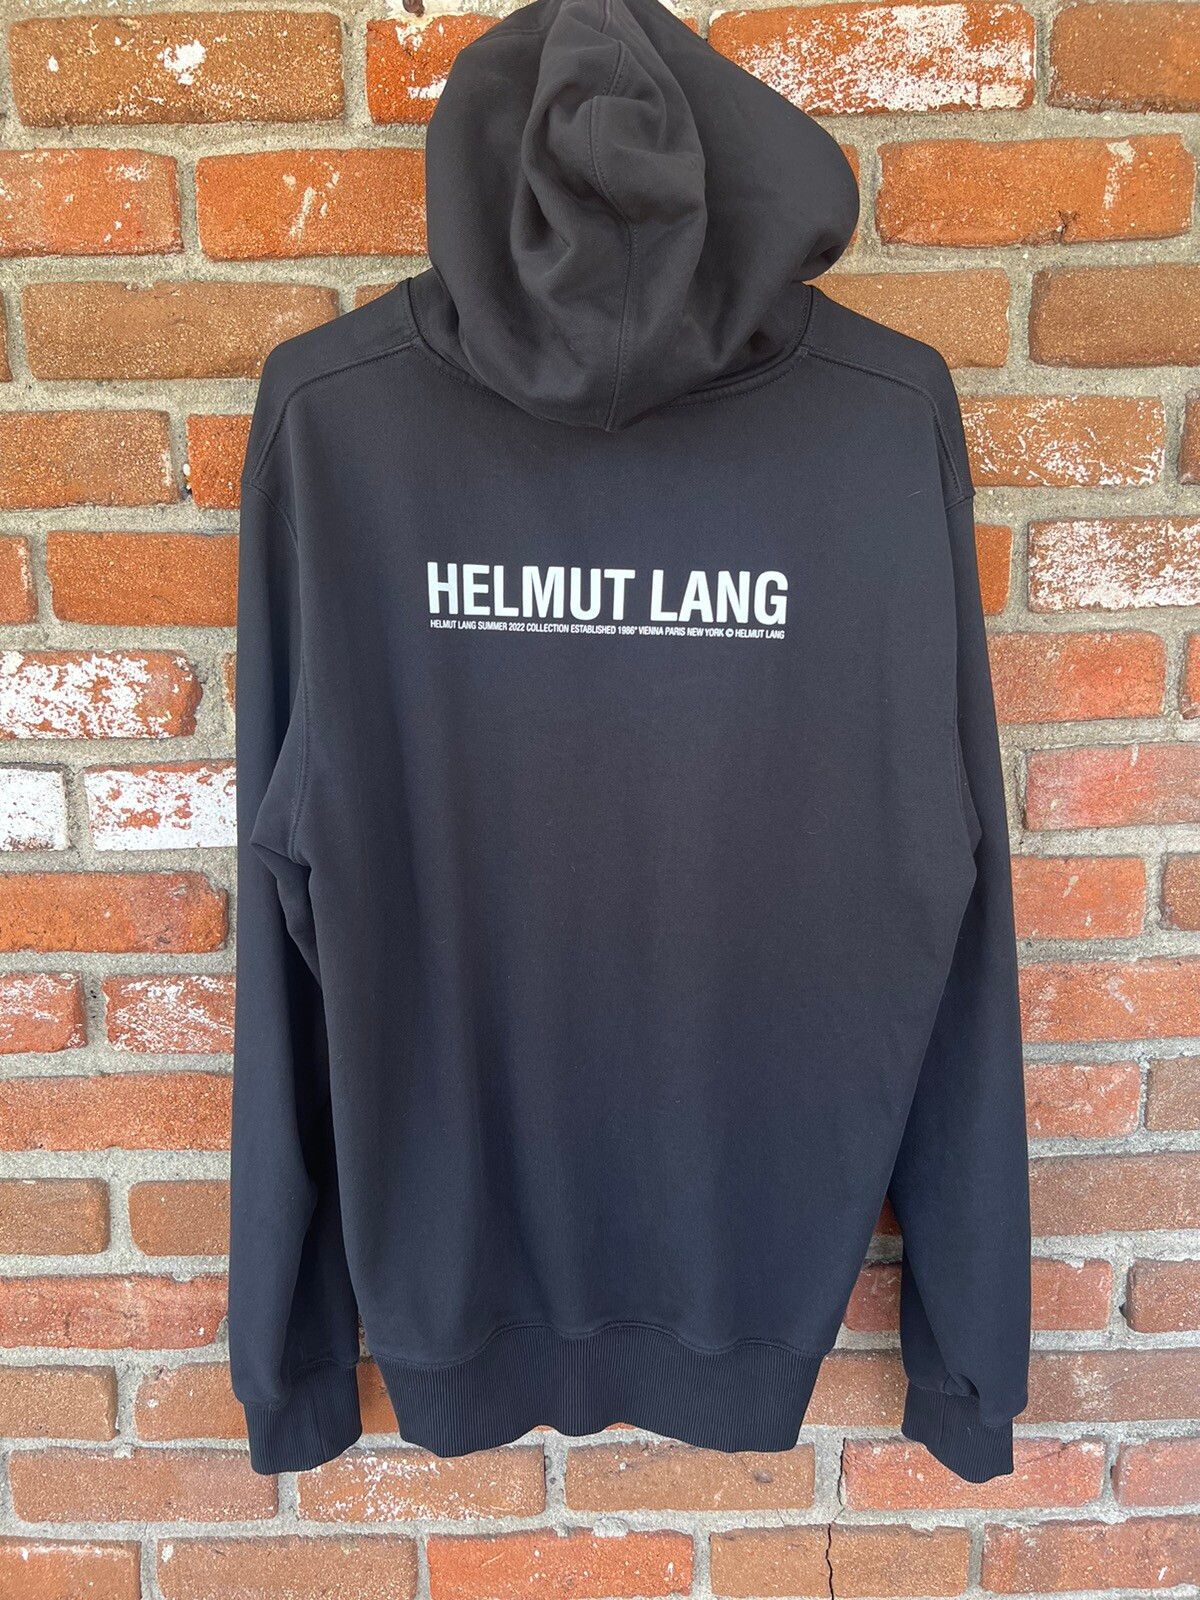 Helmut Lang Helmut Lang Vienna Hoodie | Grailed